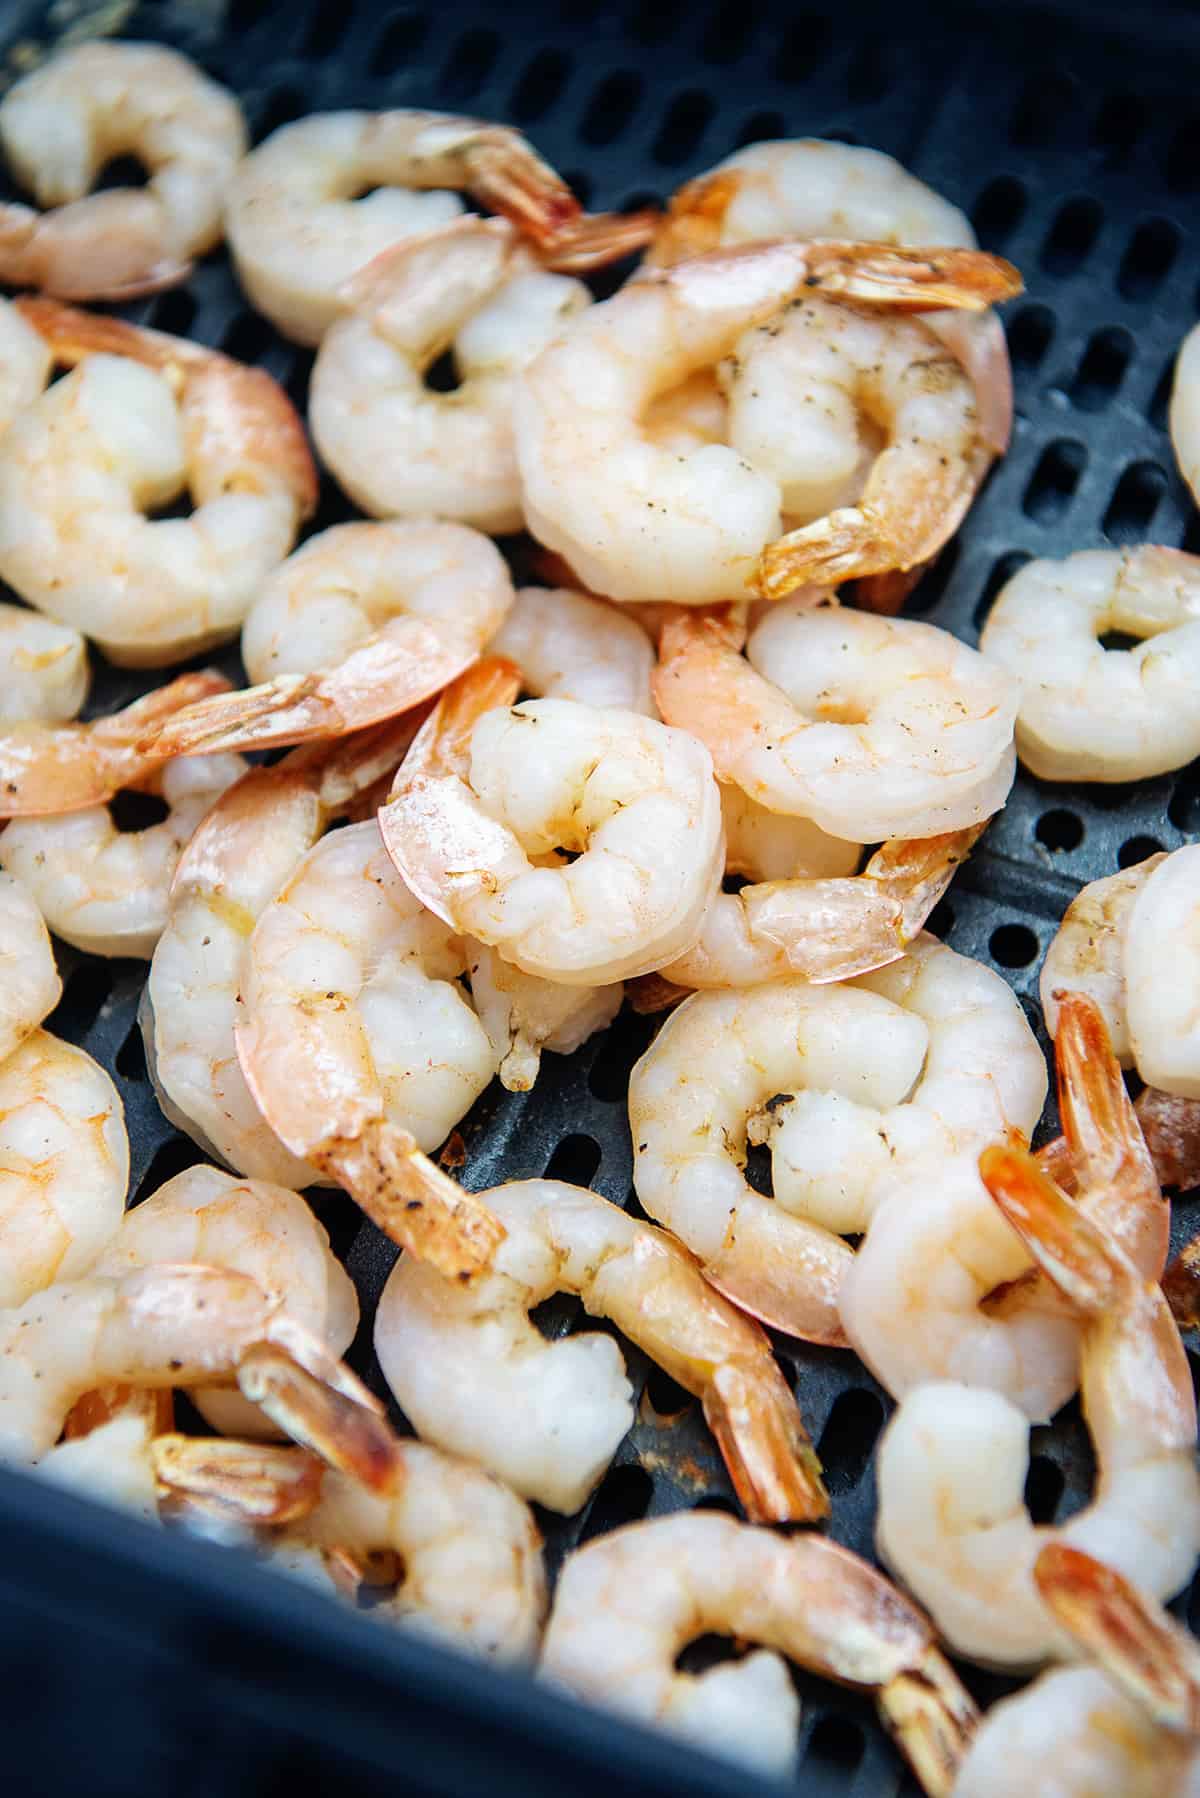 shrimp in air fryer basket.